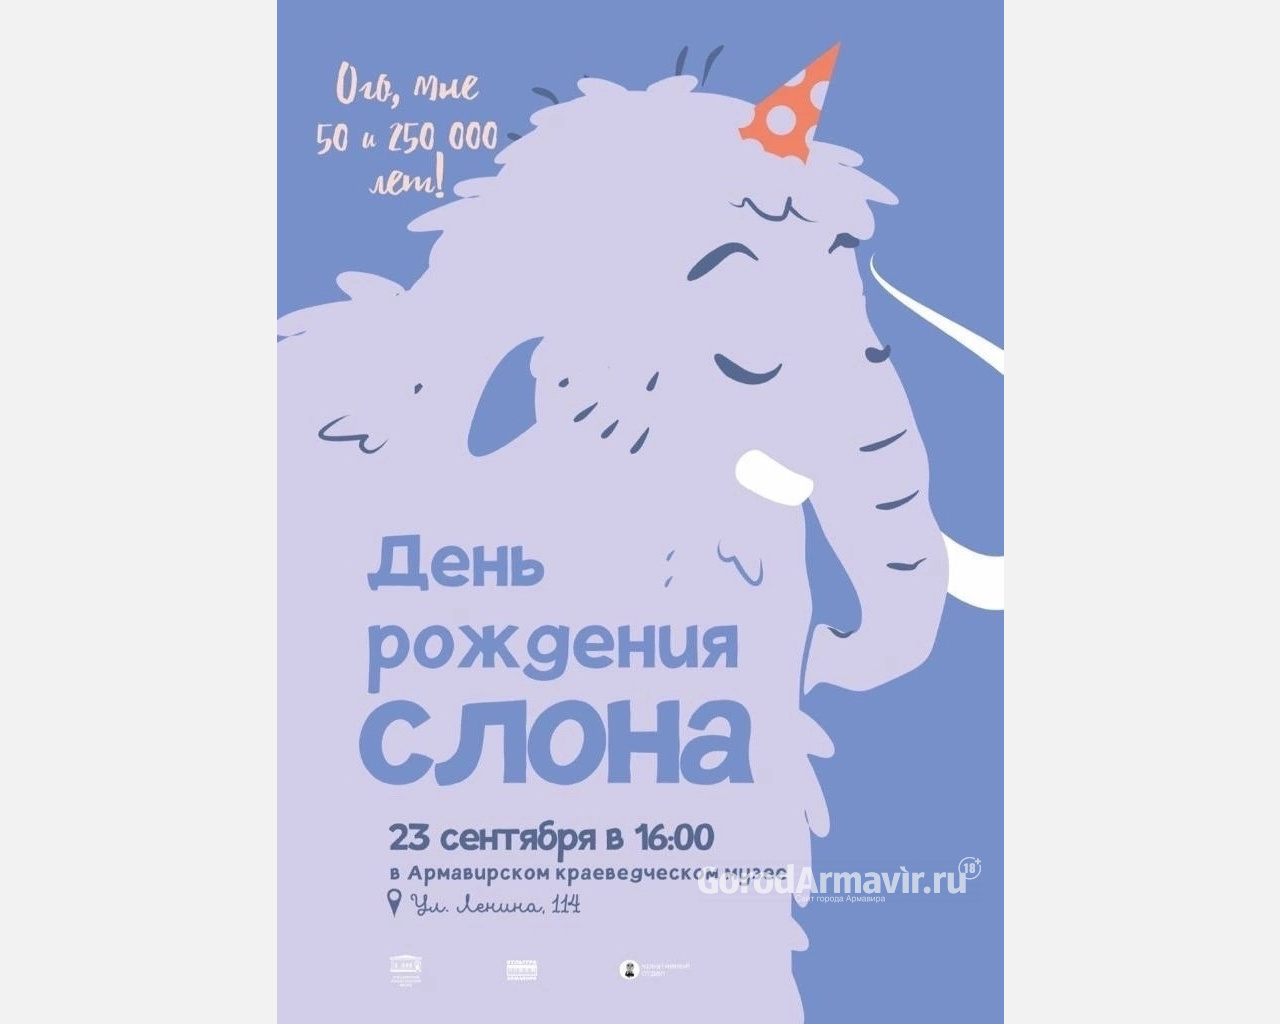 В Армавире 23 сентября в музее пройдет весёлый детский праздник "День рождения слона!"